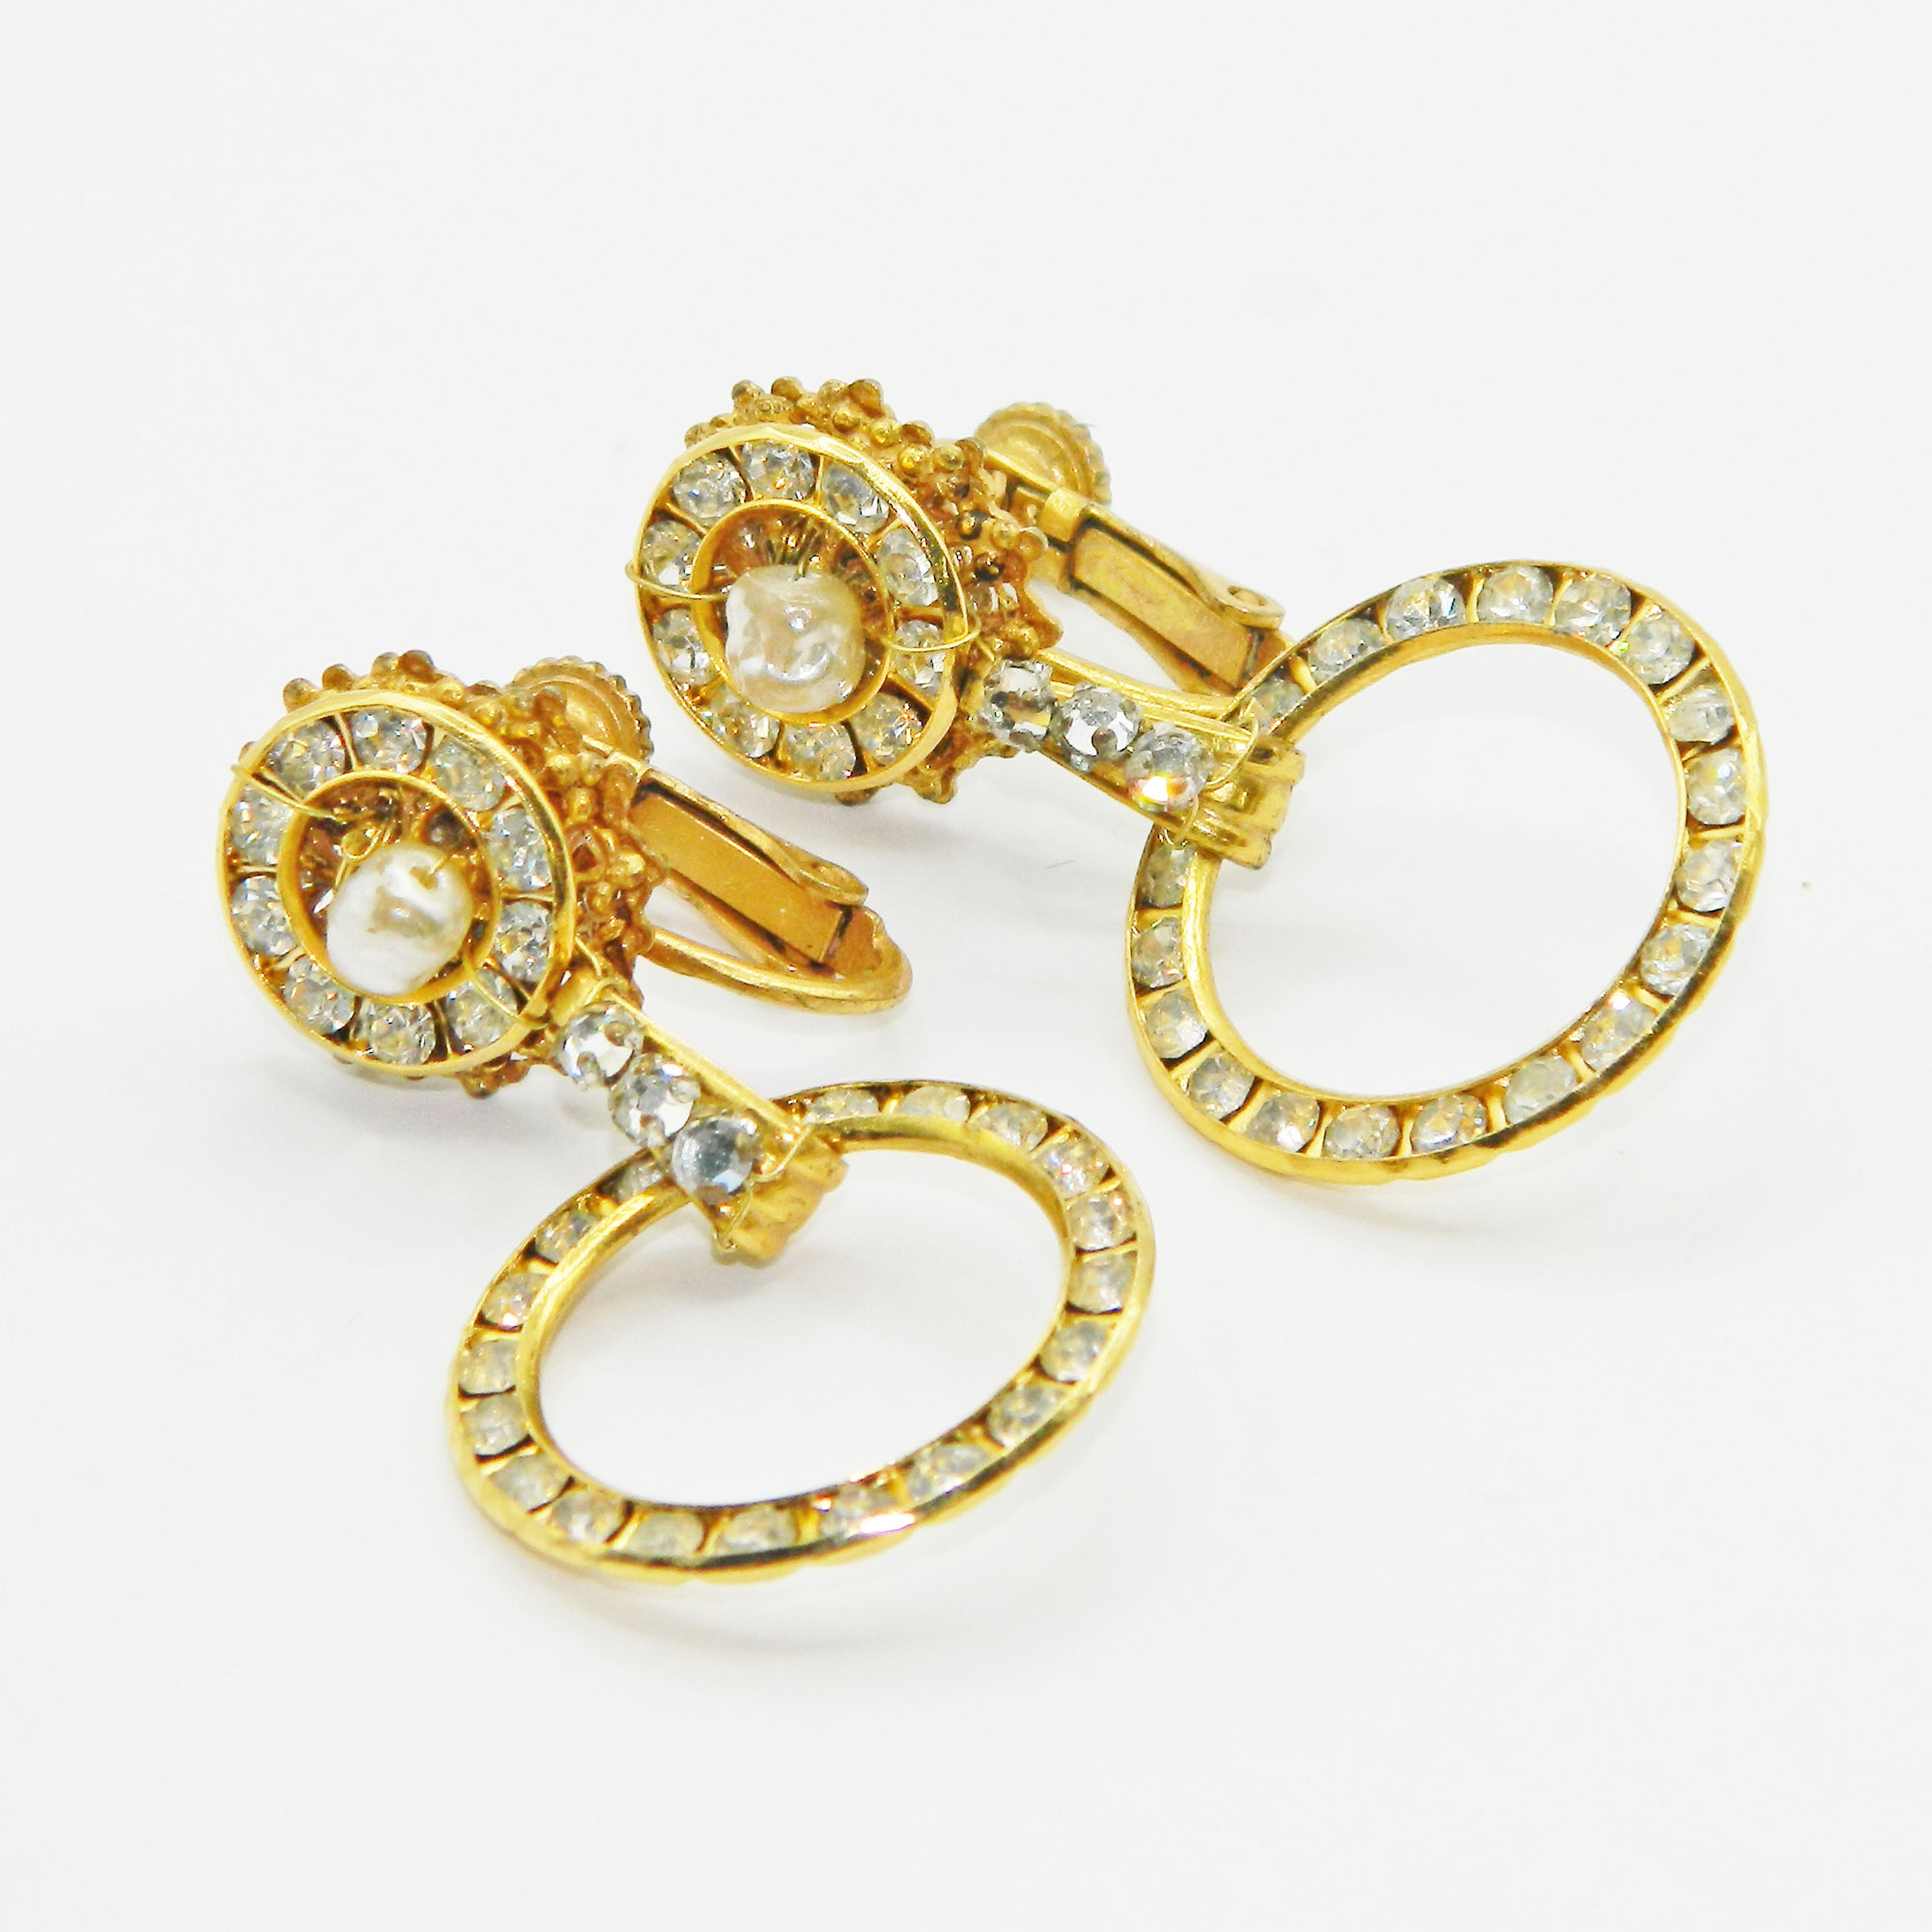 1970s Miriam Haskell earrings